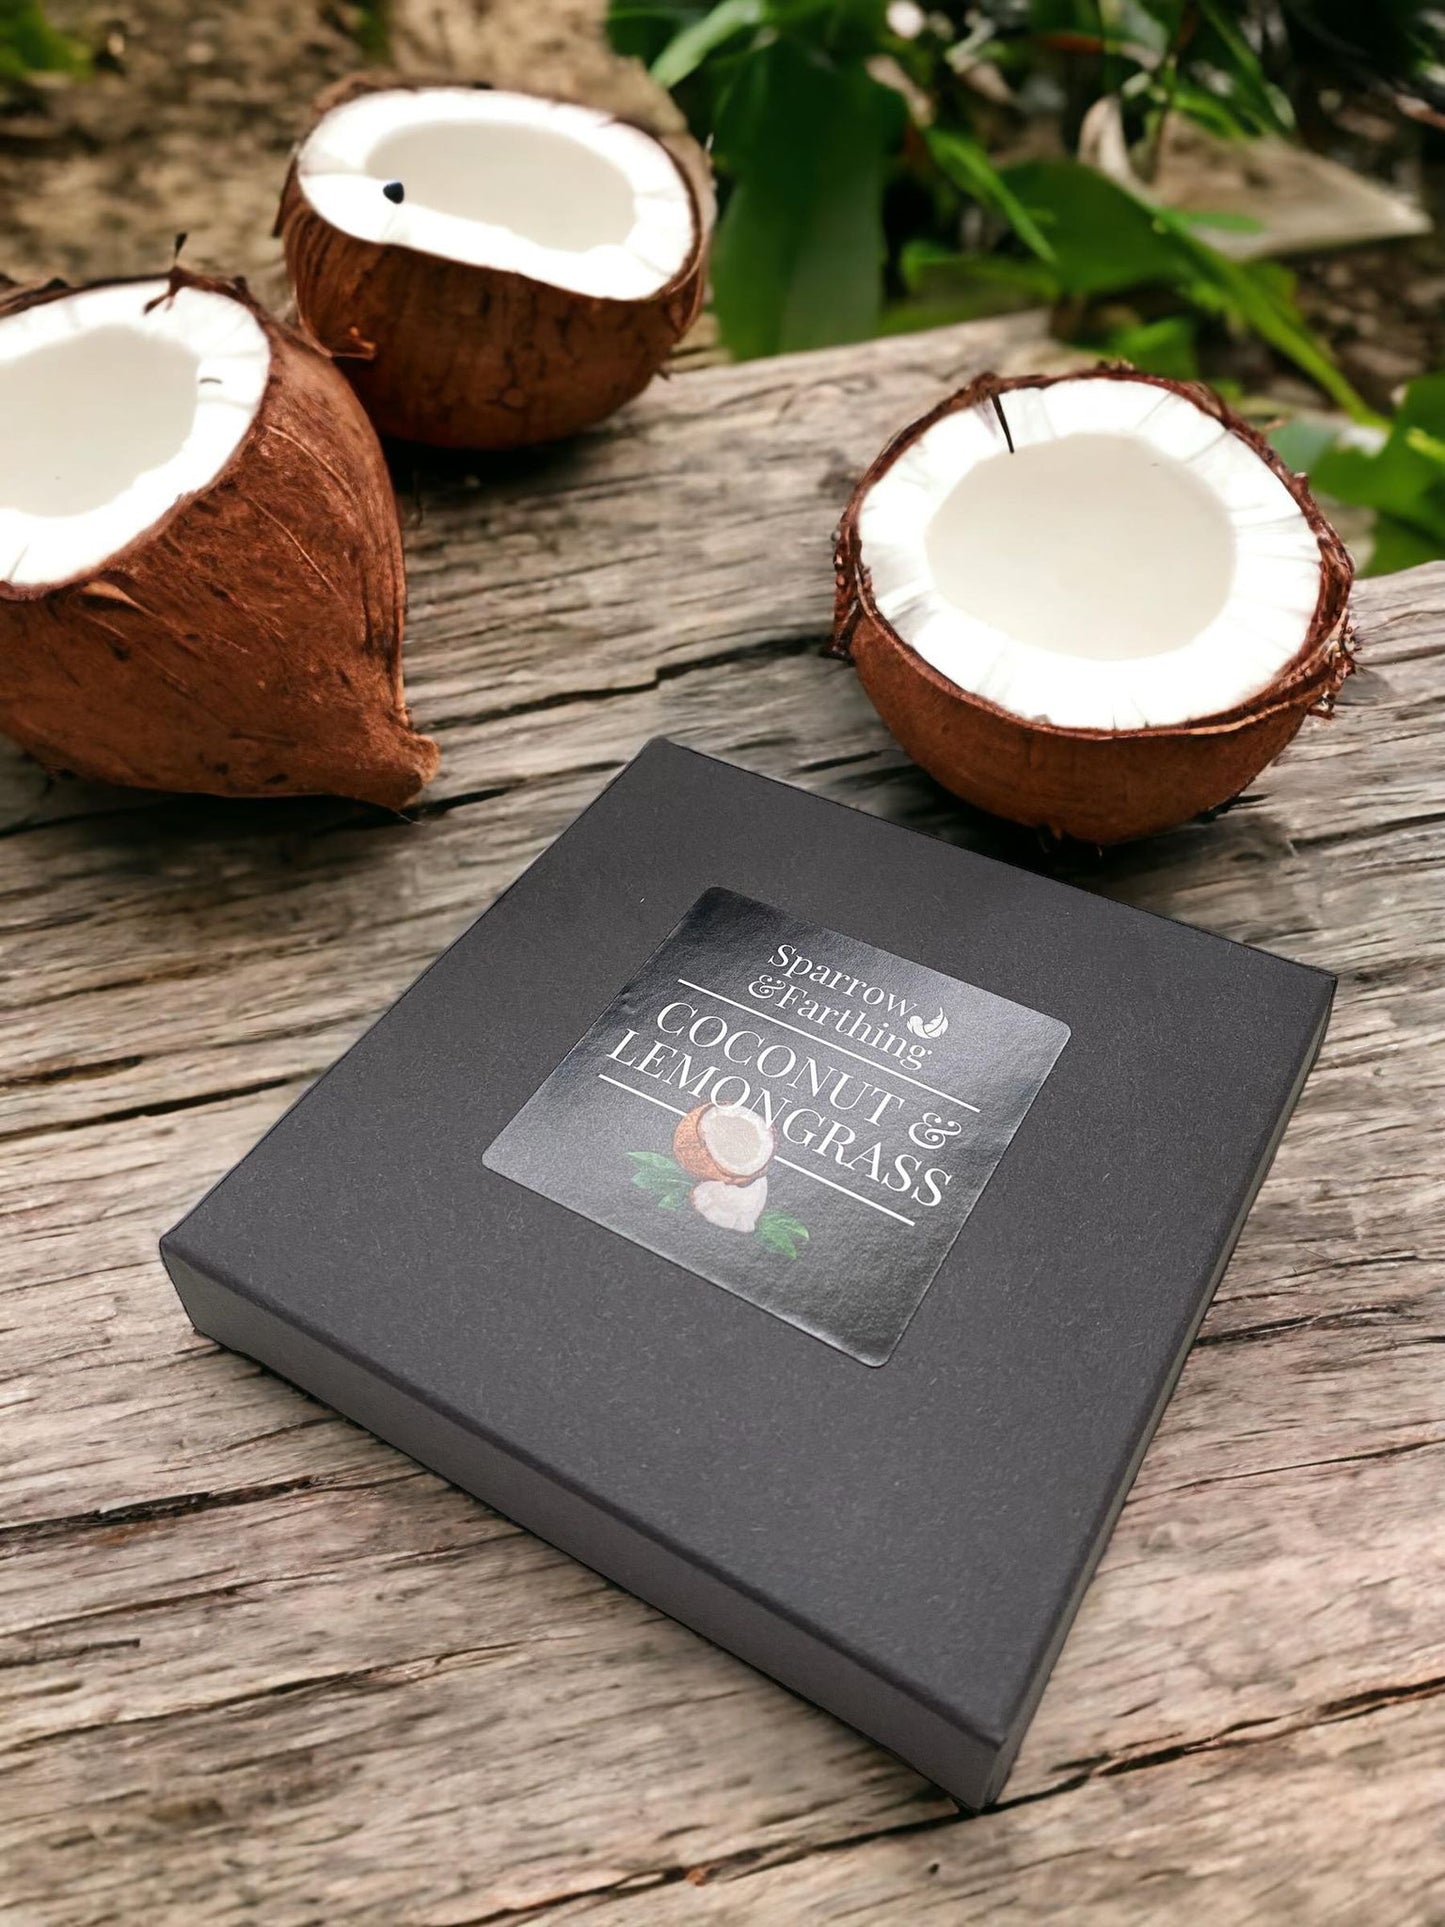 Coconut & Lemongrass Tea Lights Gift Box